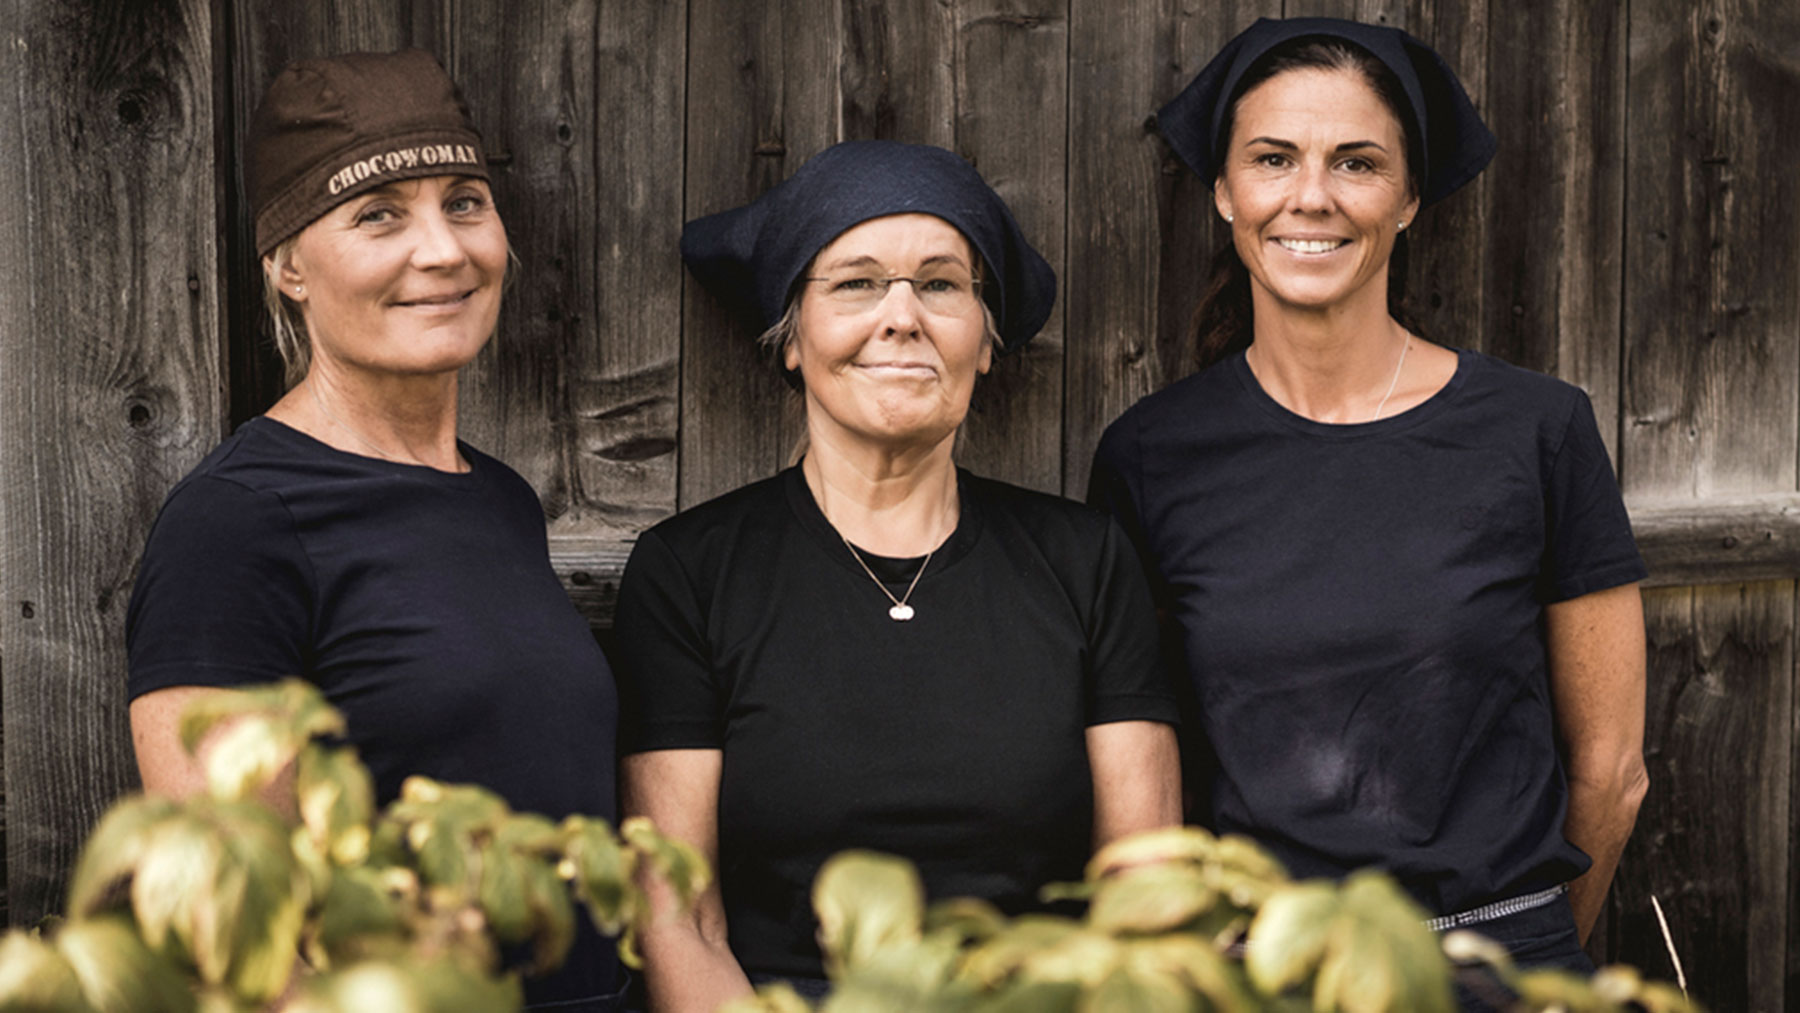 Åre Chokladfabriks grundare och ägare Marie Söderhielm, Eva-Lena Grape och Marina Hansson har ingen enskild vd